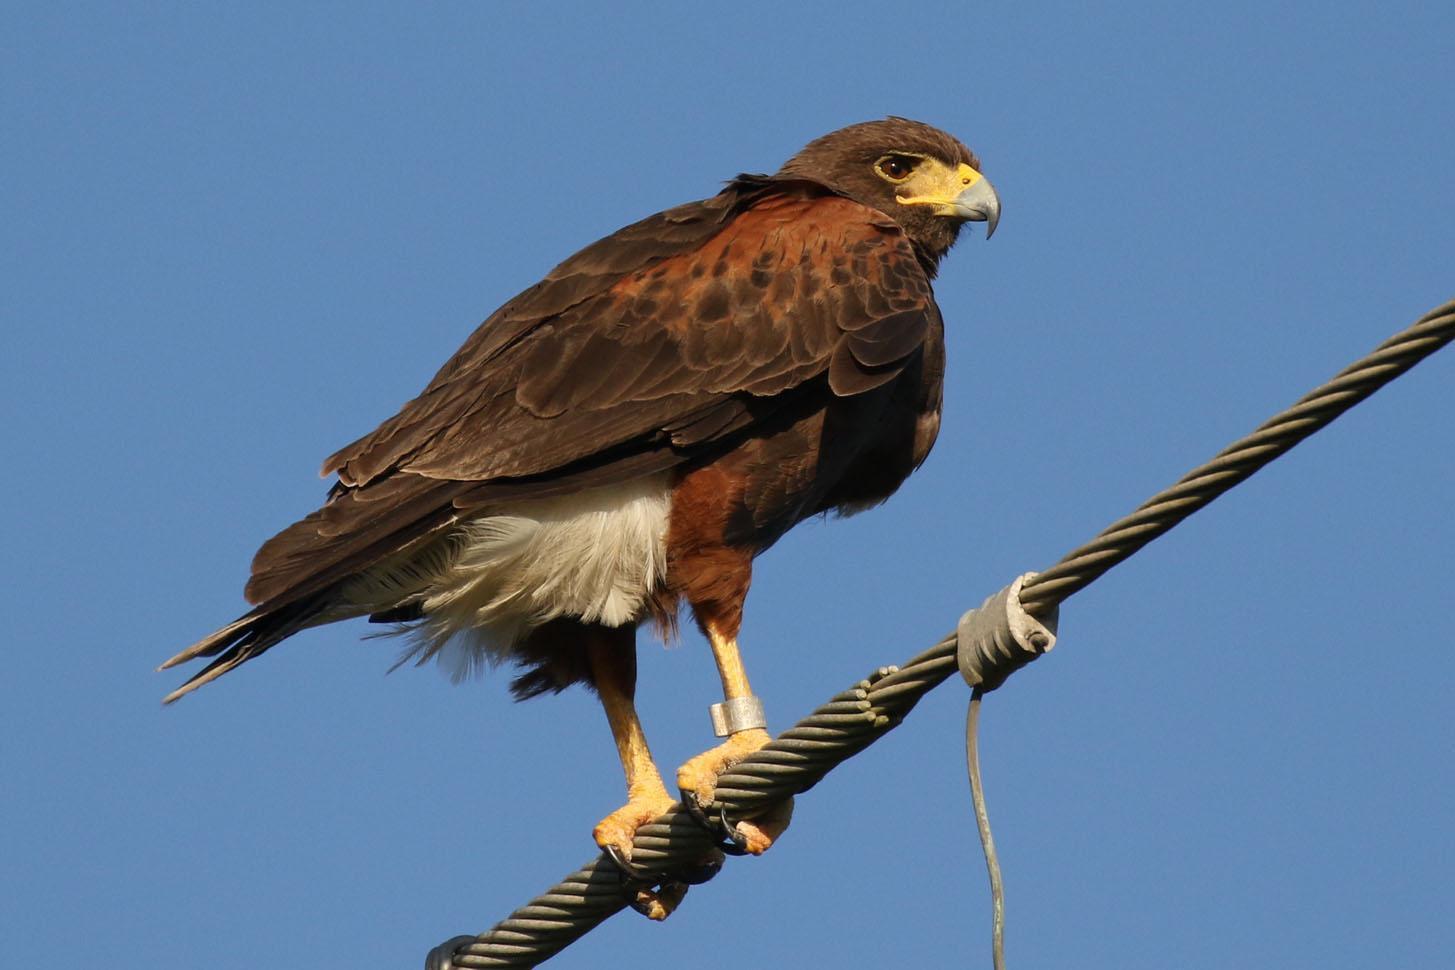 Harris's Hawk Photo by Kristy Baker